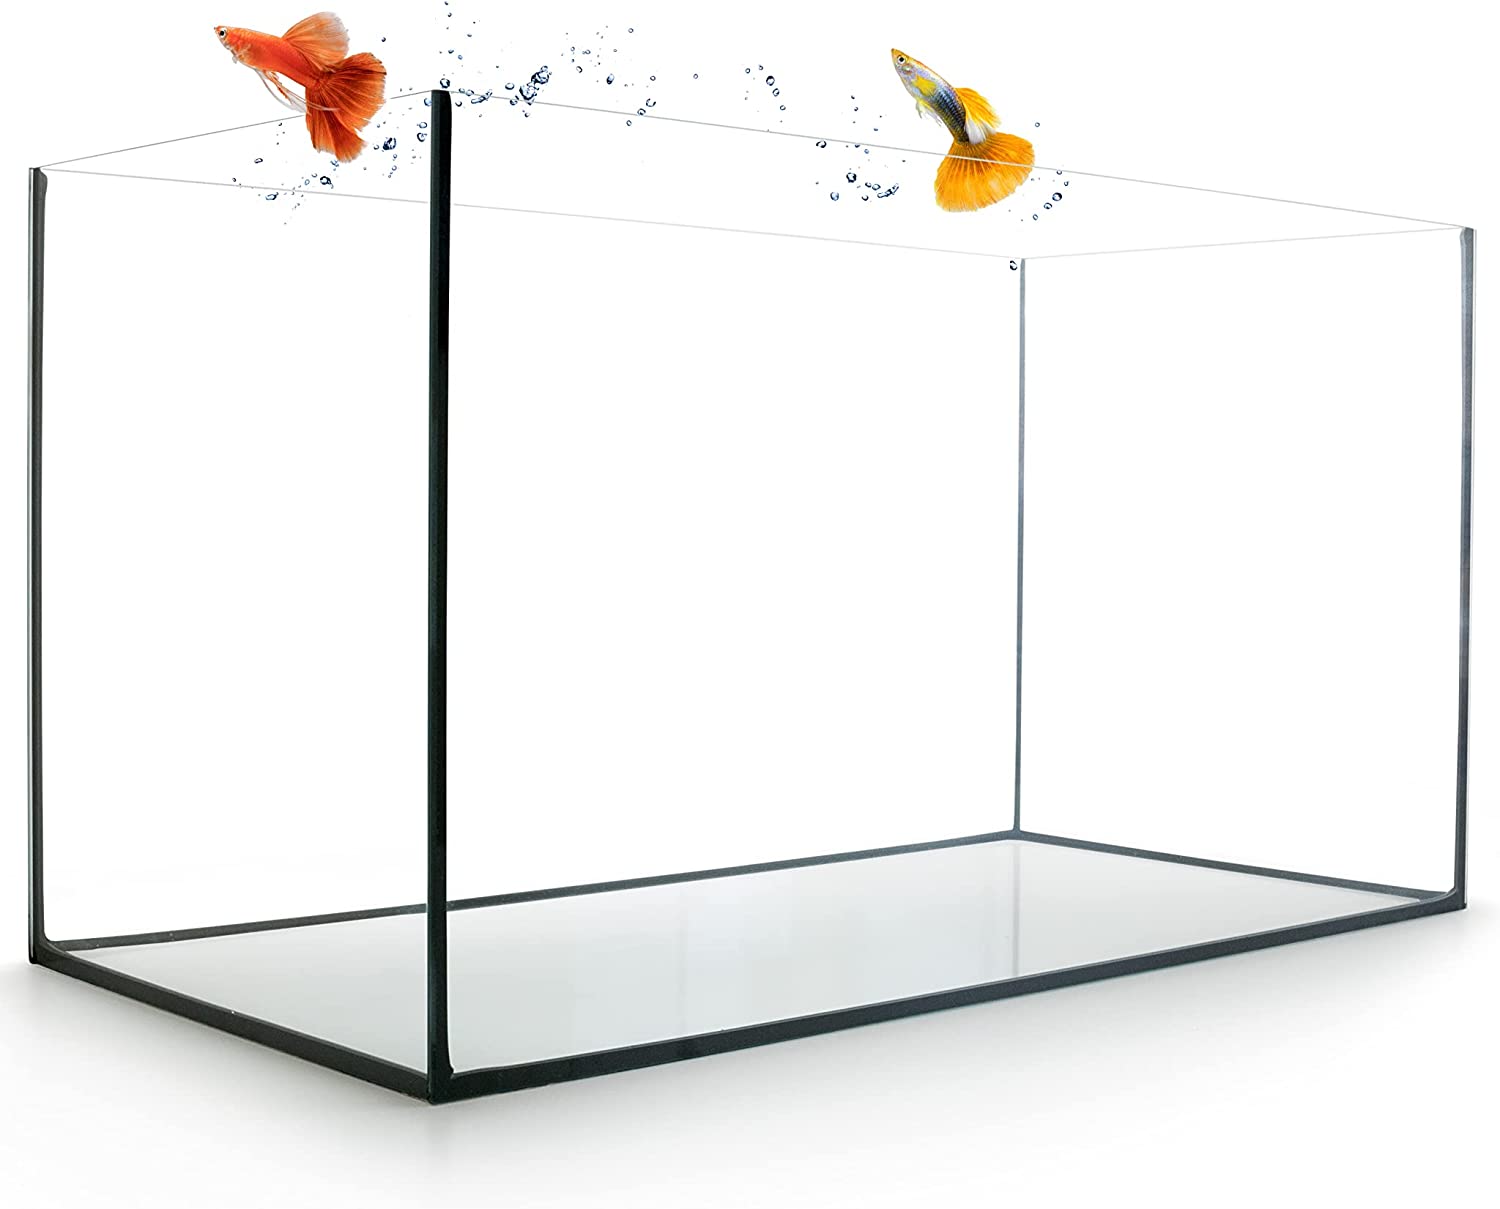 GarPet Aquarium aus Glas - Glasbecken für Süß- und Seewasser - hochwertiges Glas-Aquarium - Premium Fisch-Aquarium - Fisch-Becken 80 x 35 x 40 cm